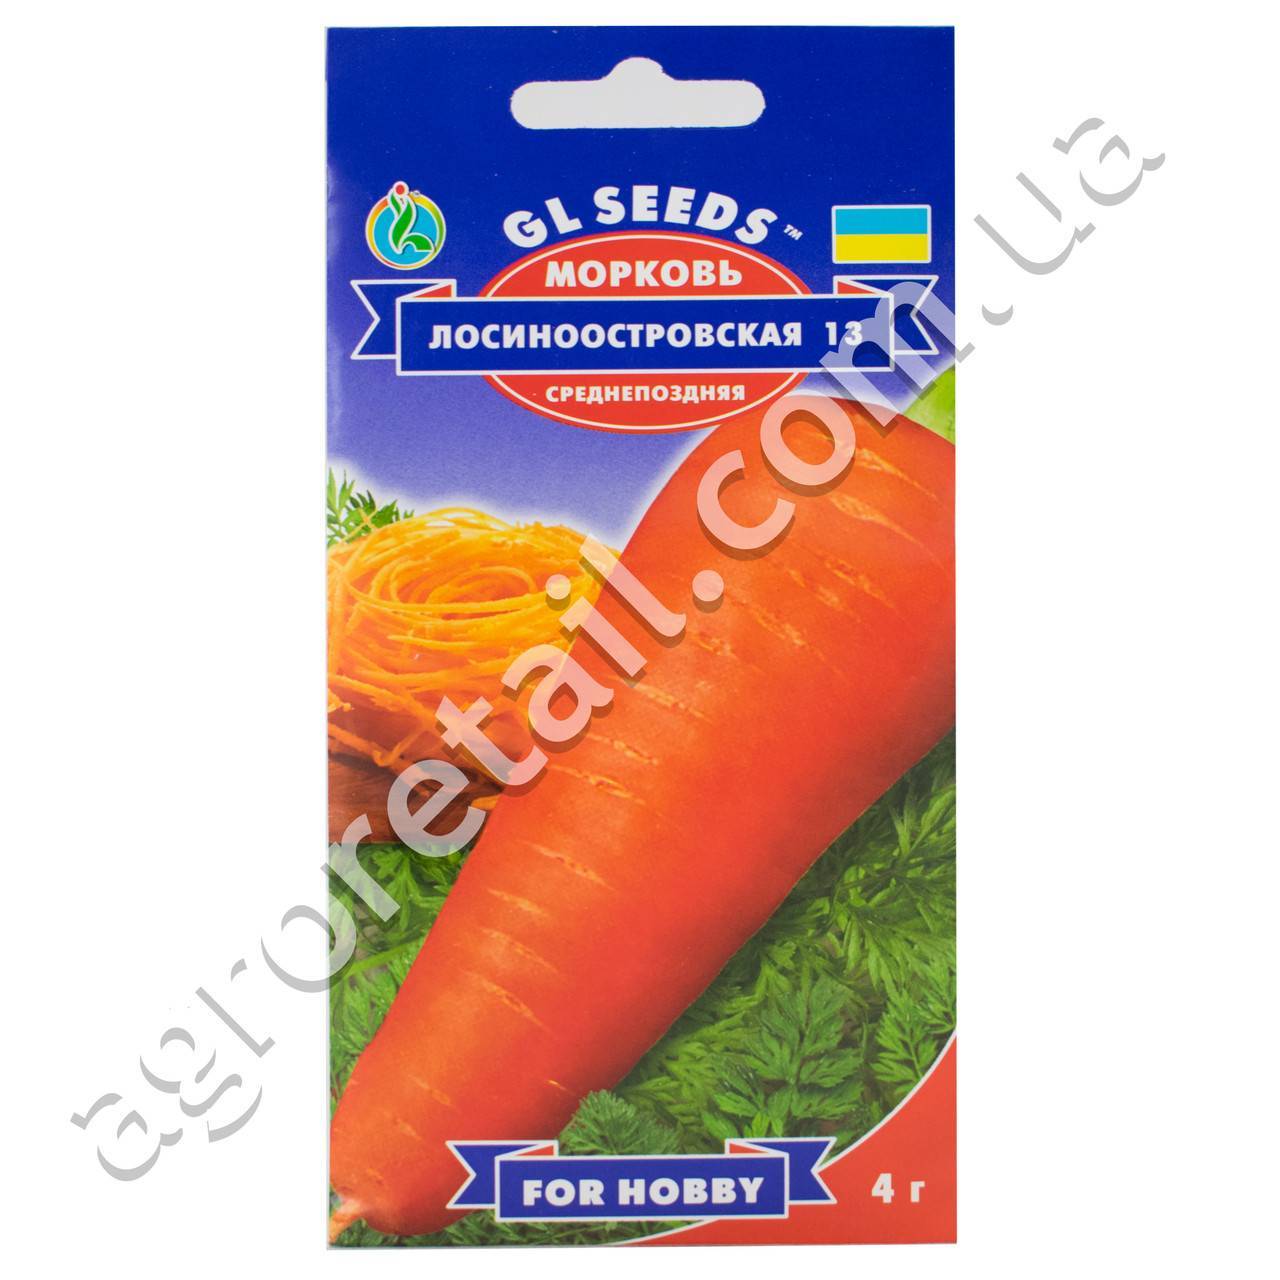 Морковь "лосиноостровская 13": описание и характеристика сорта, особенности посадки и выращивания, а также сбор урожая, достоинства и недостатки